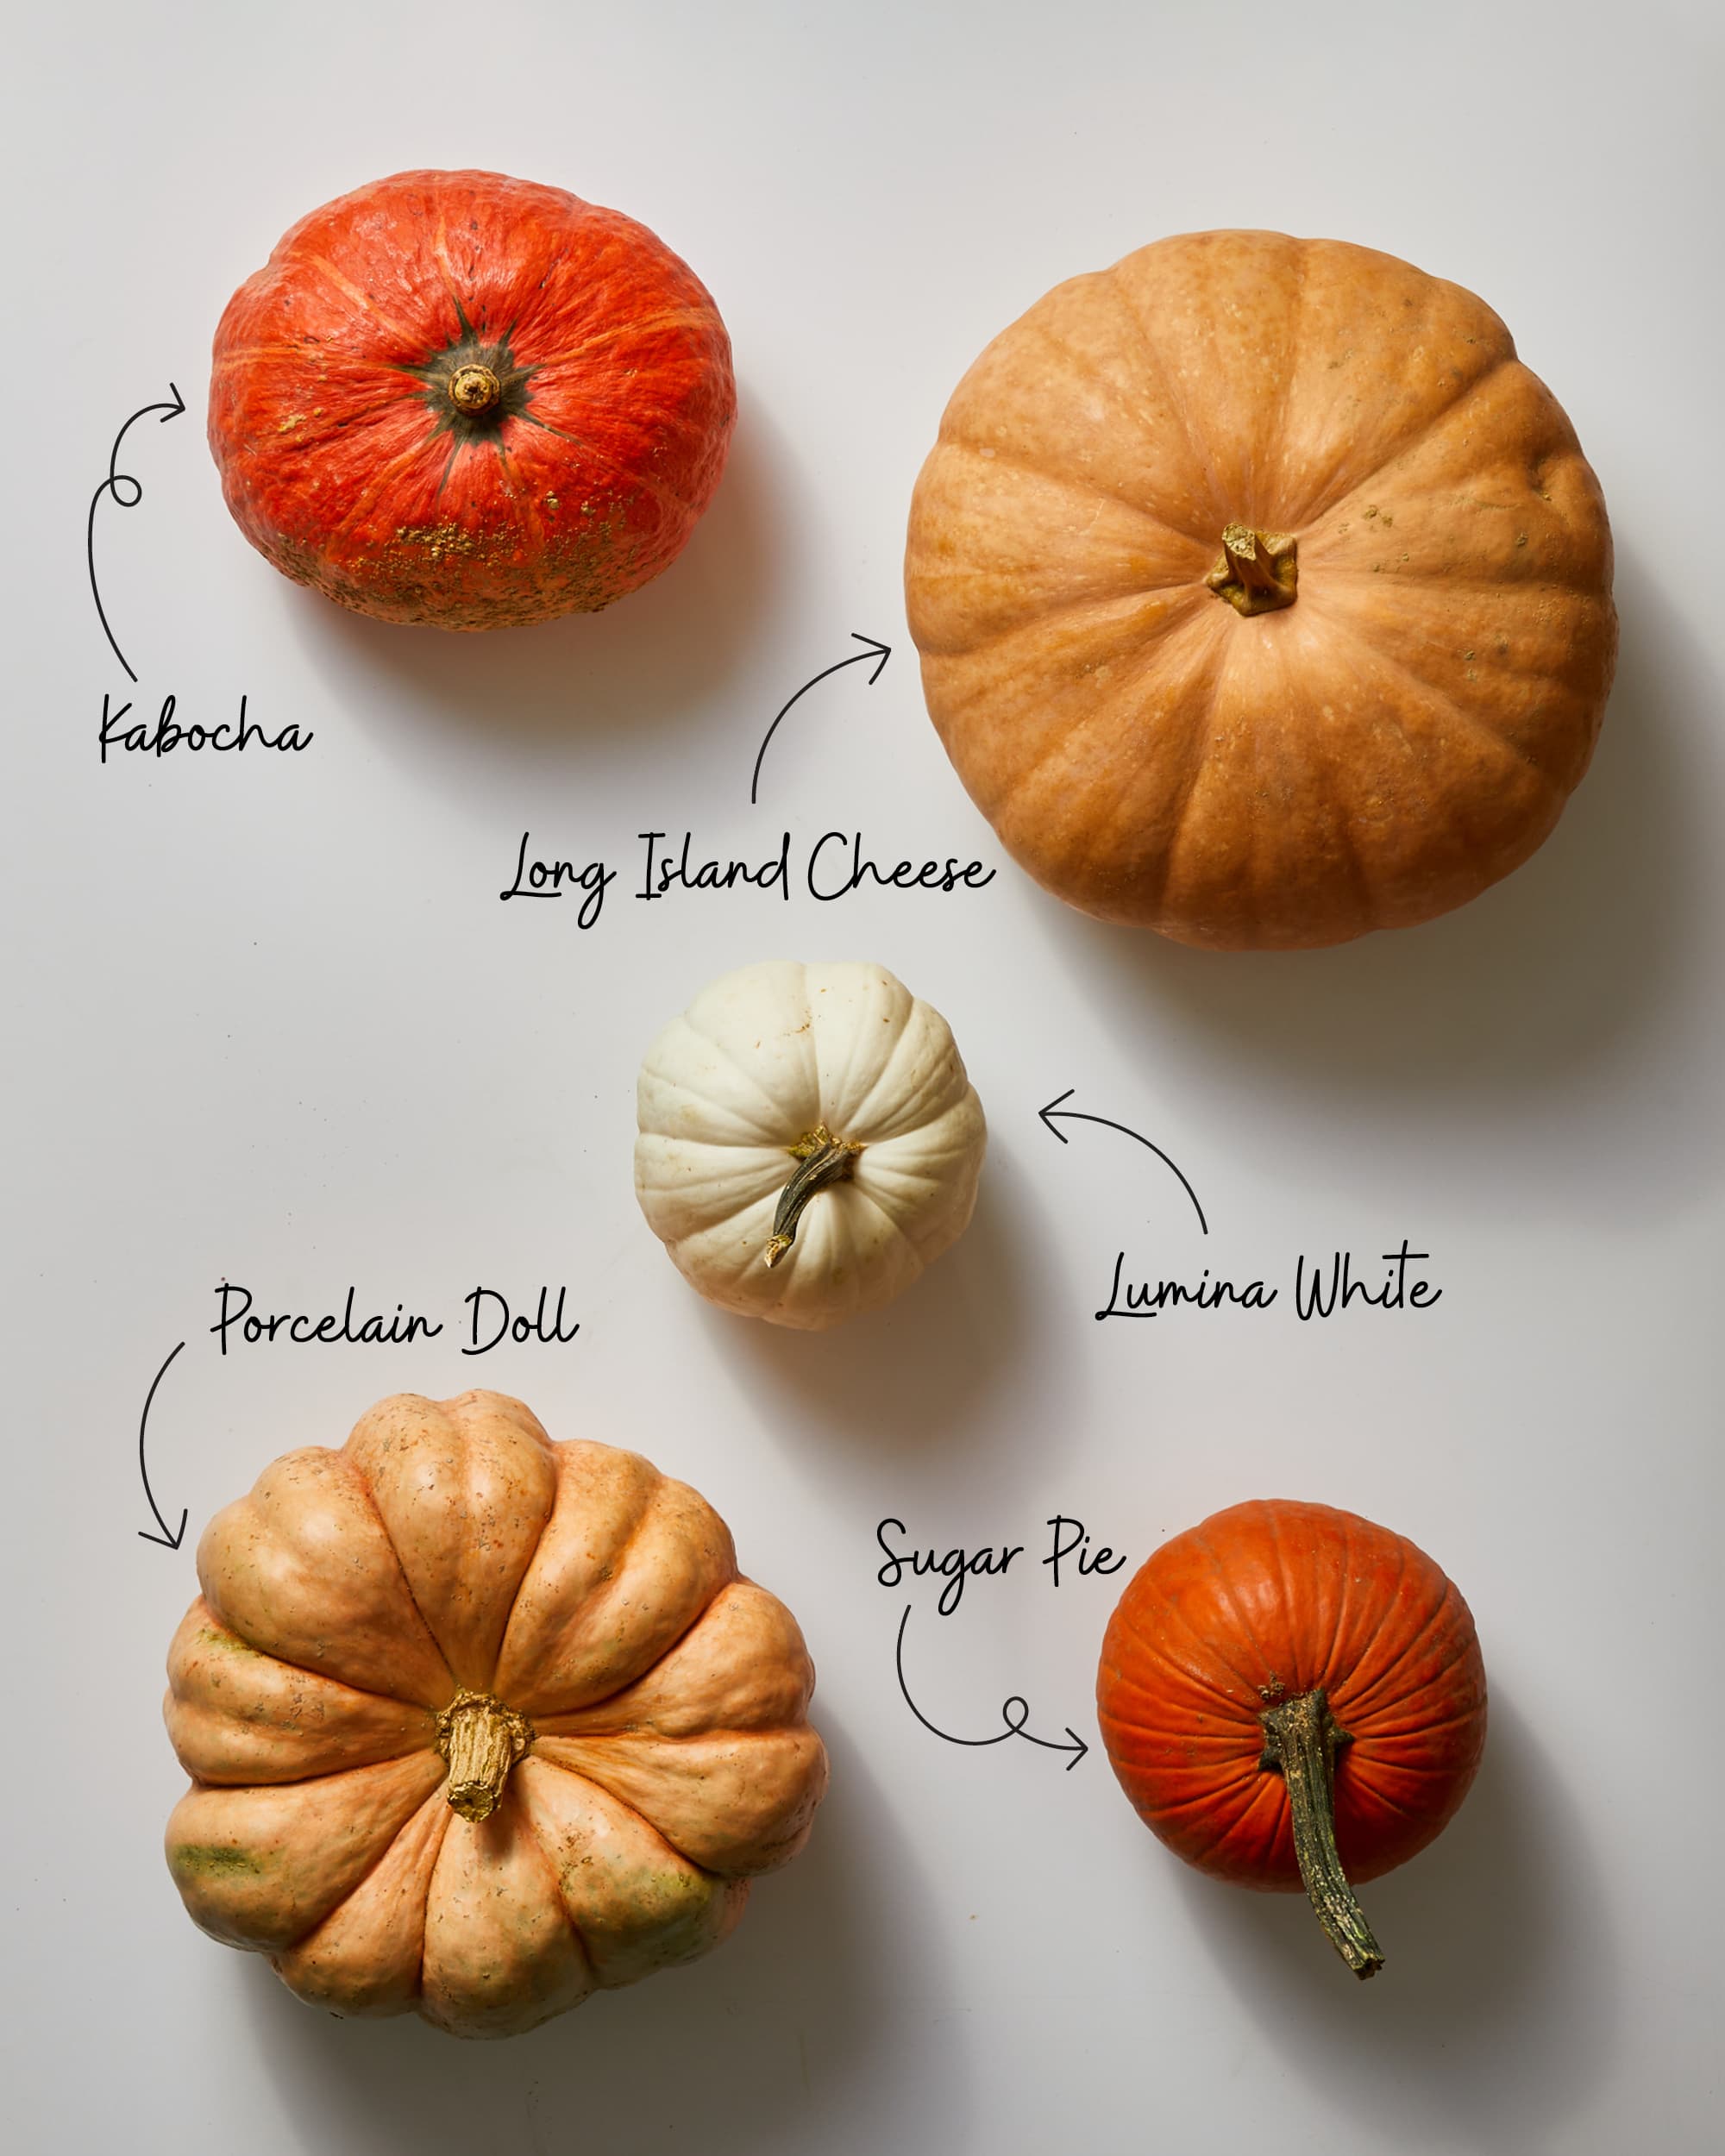 pie pumpkins varieties